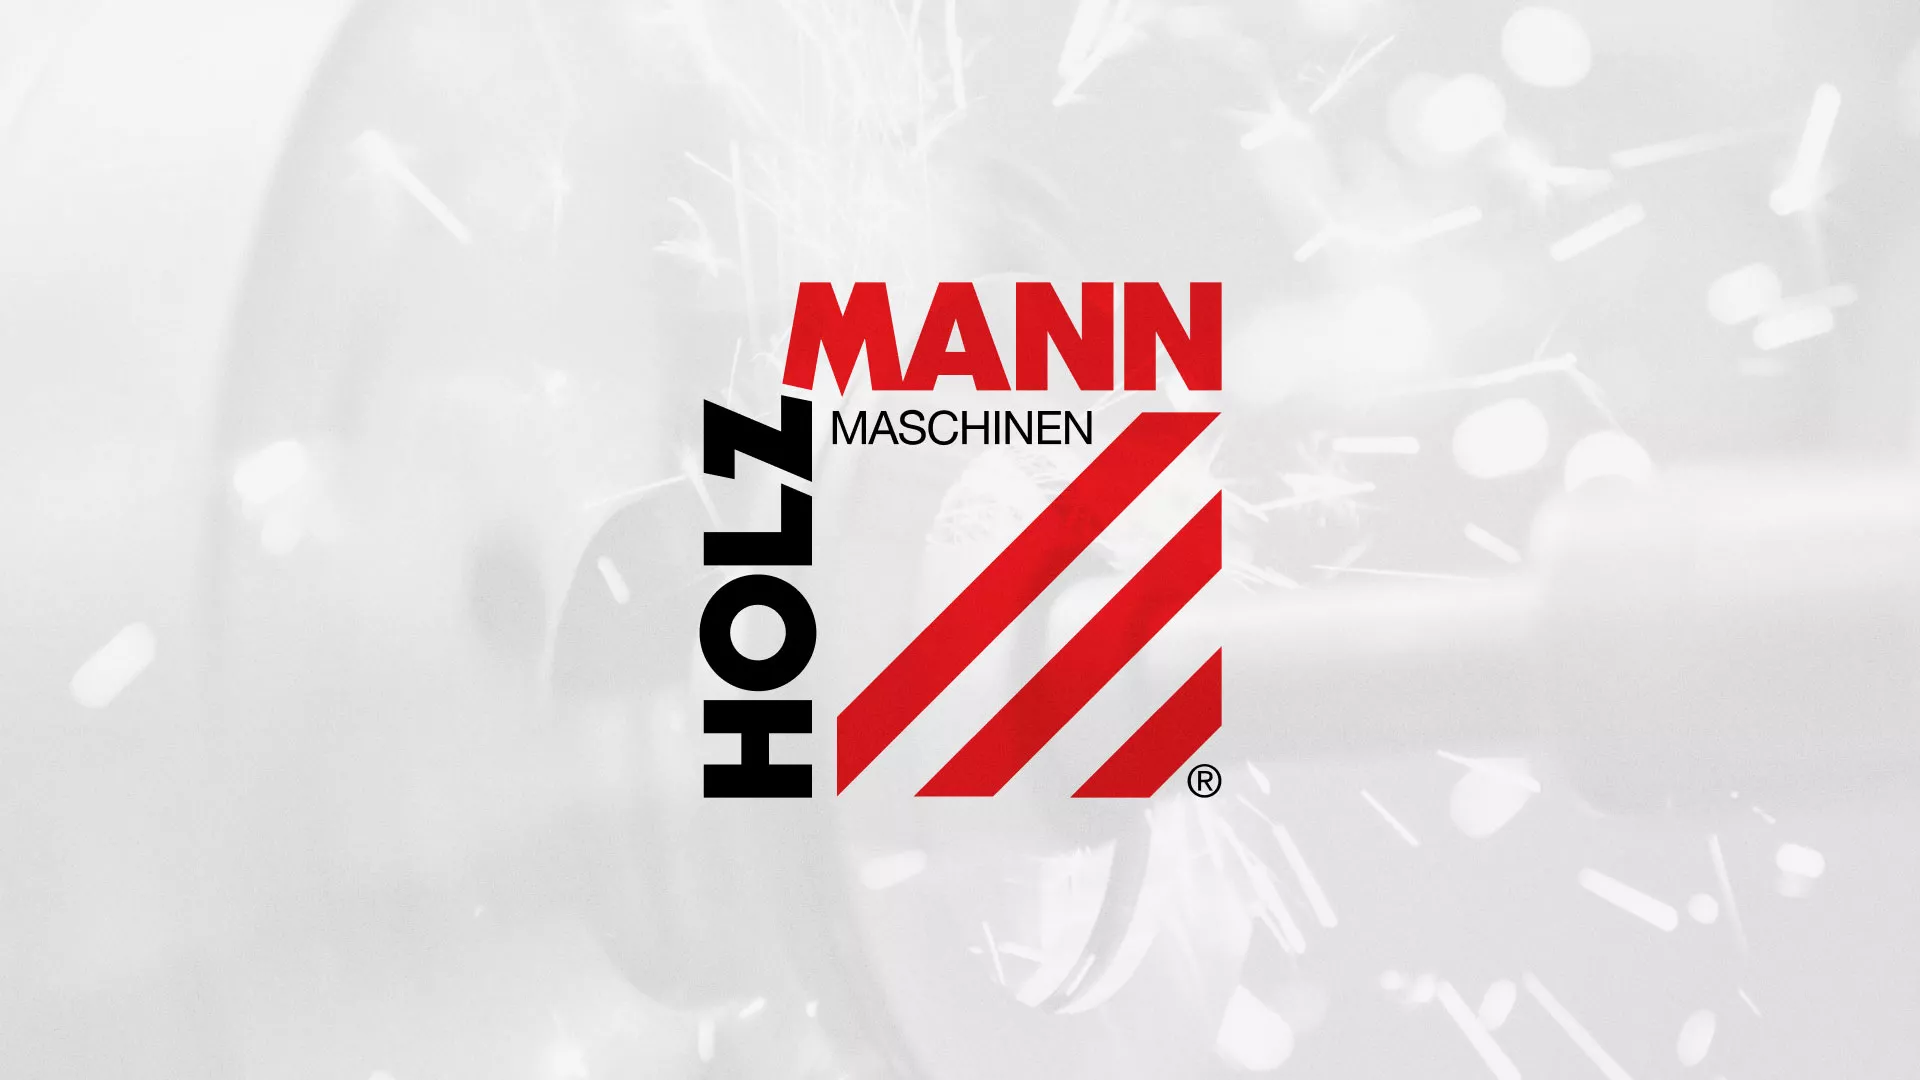 Создание сайта компании «HOLZMANN Maschinen GmbH» в Саянске